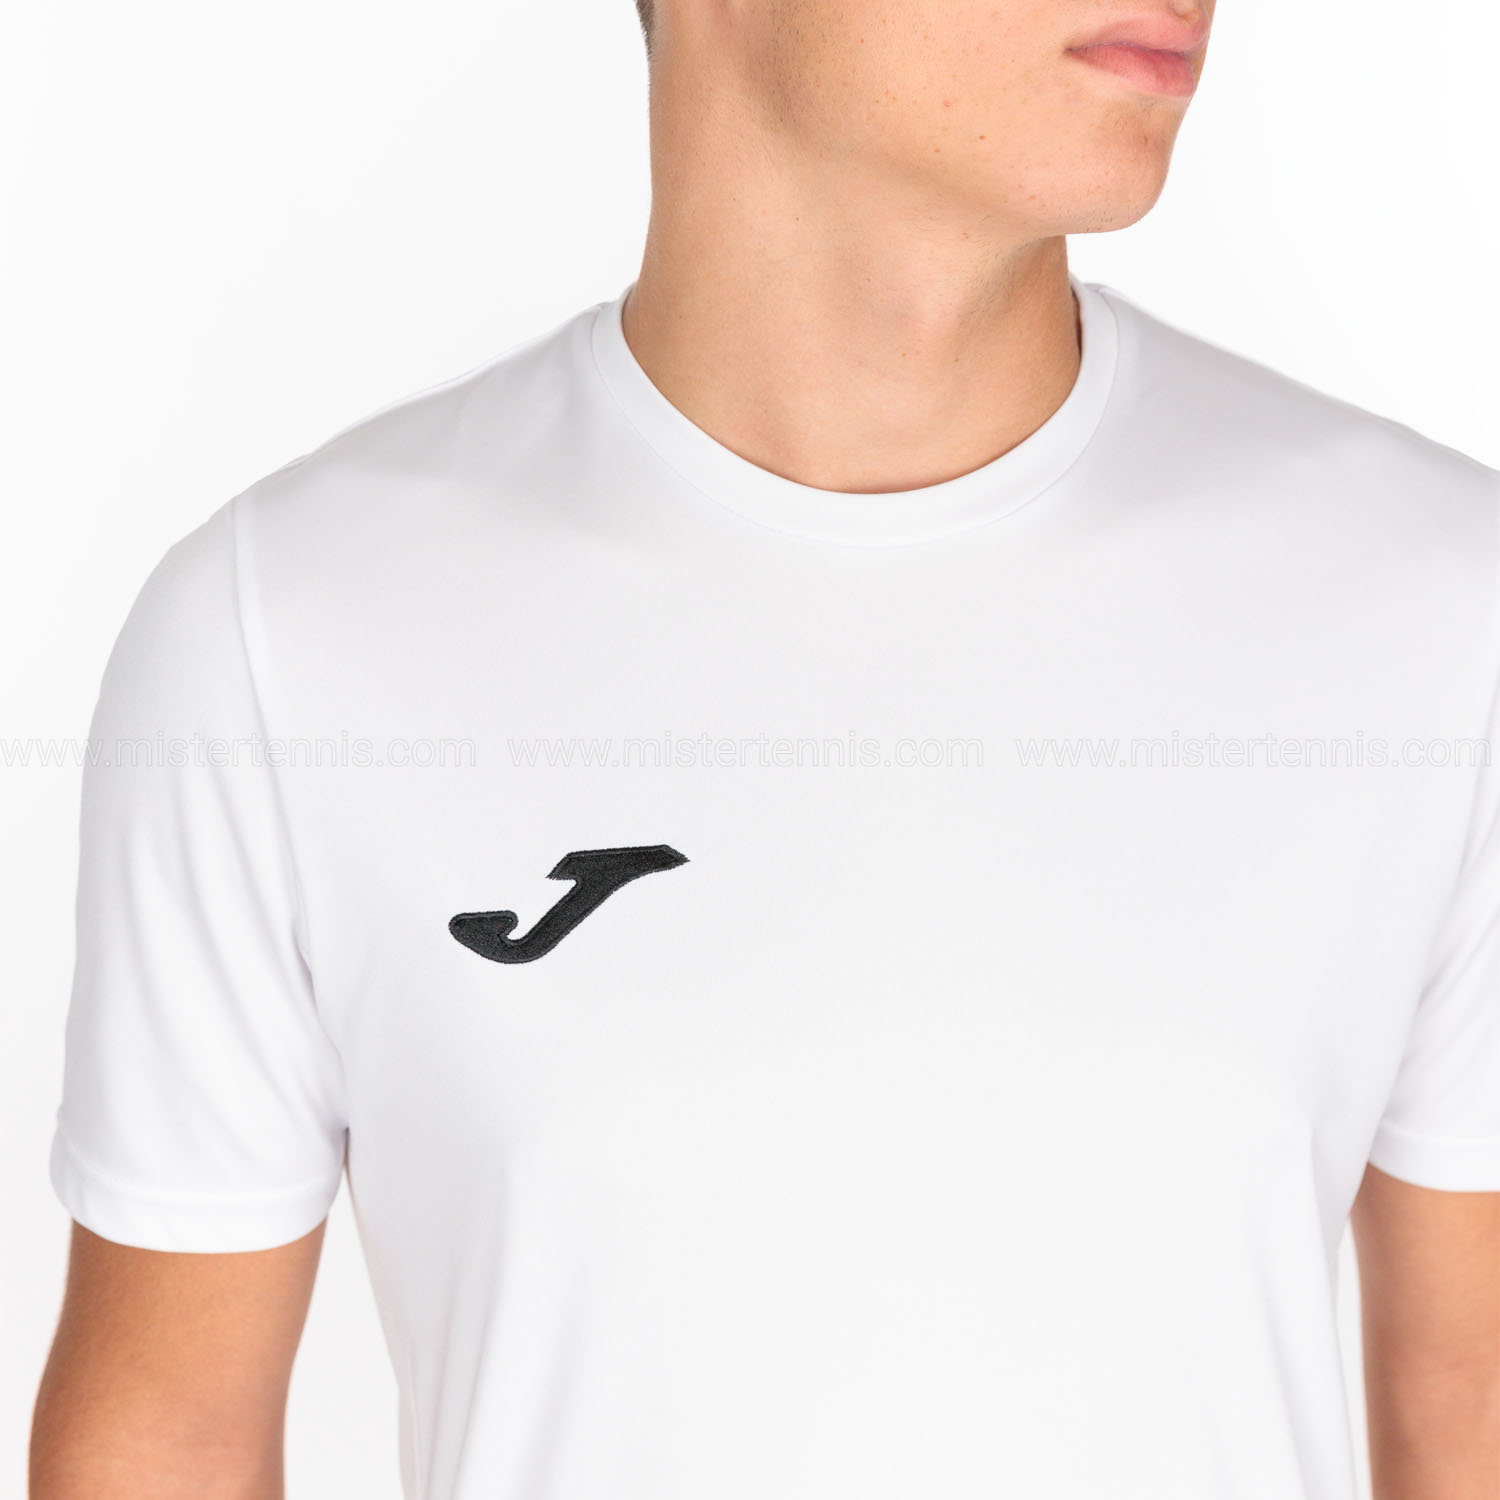 Joma Winner II T-Shirt - White